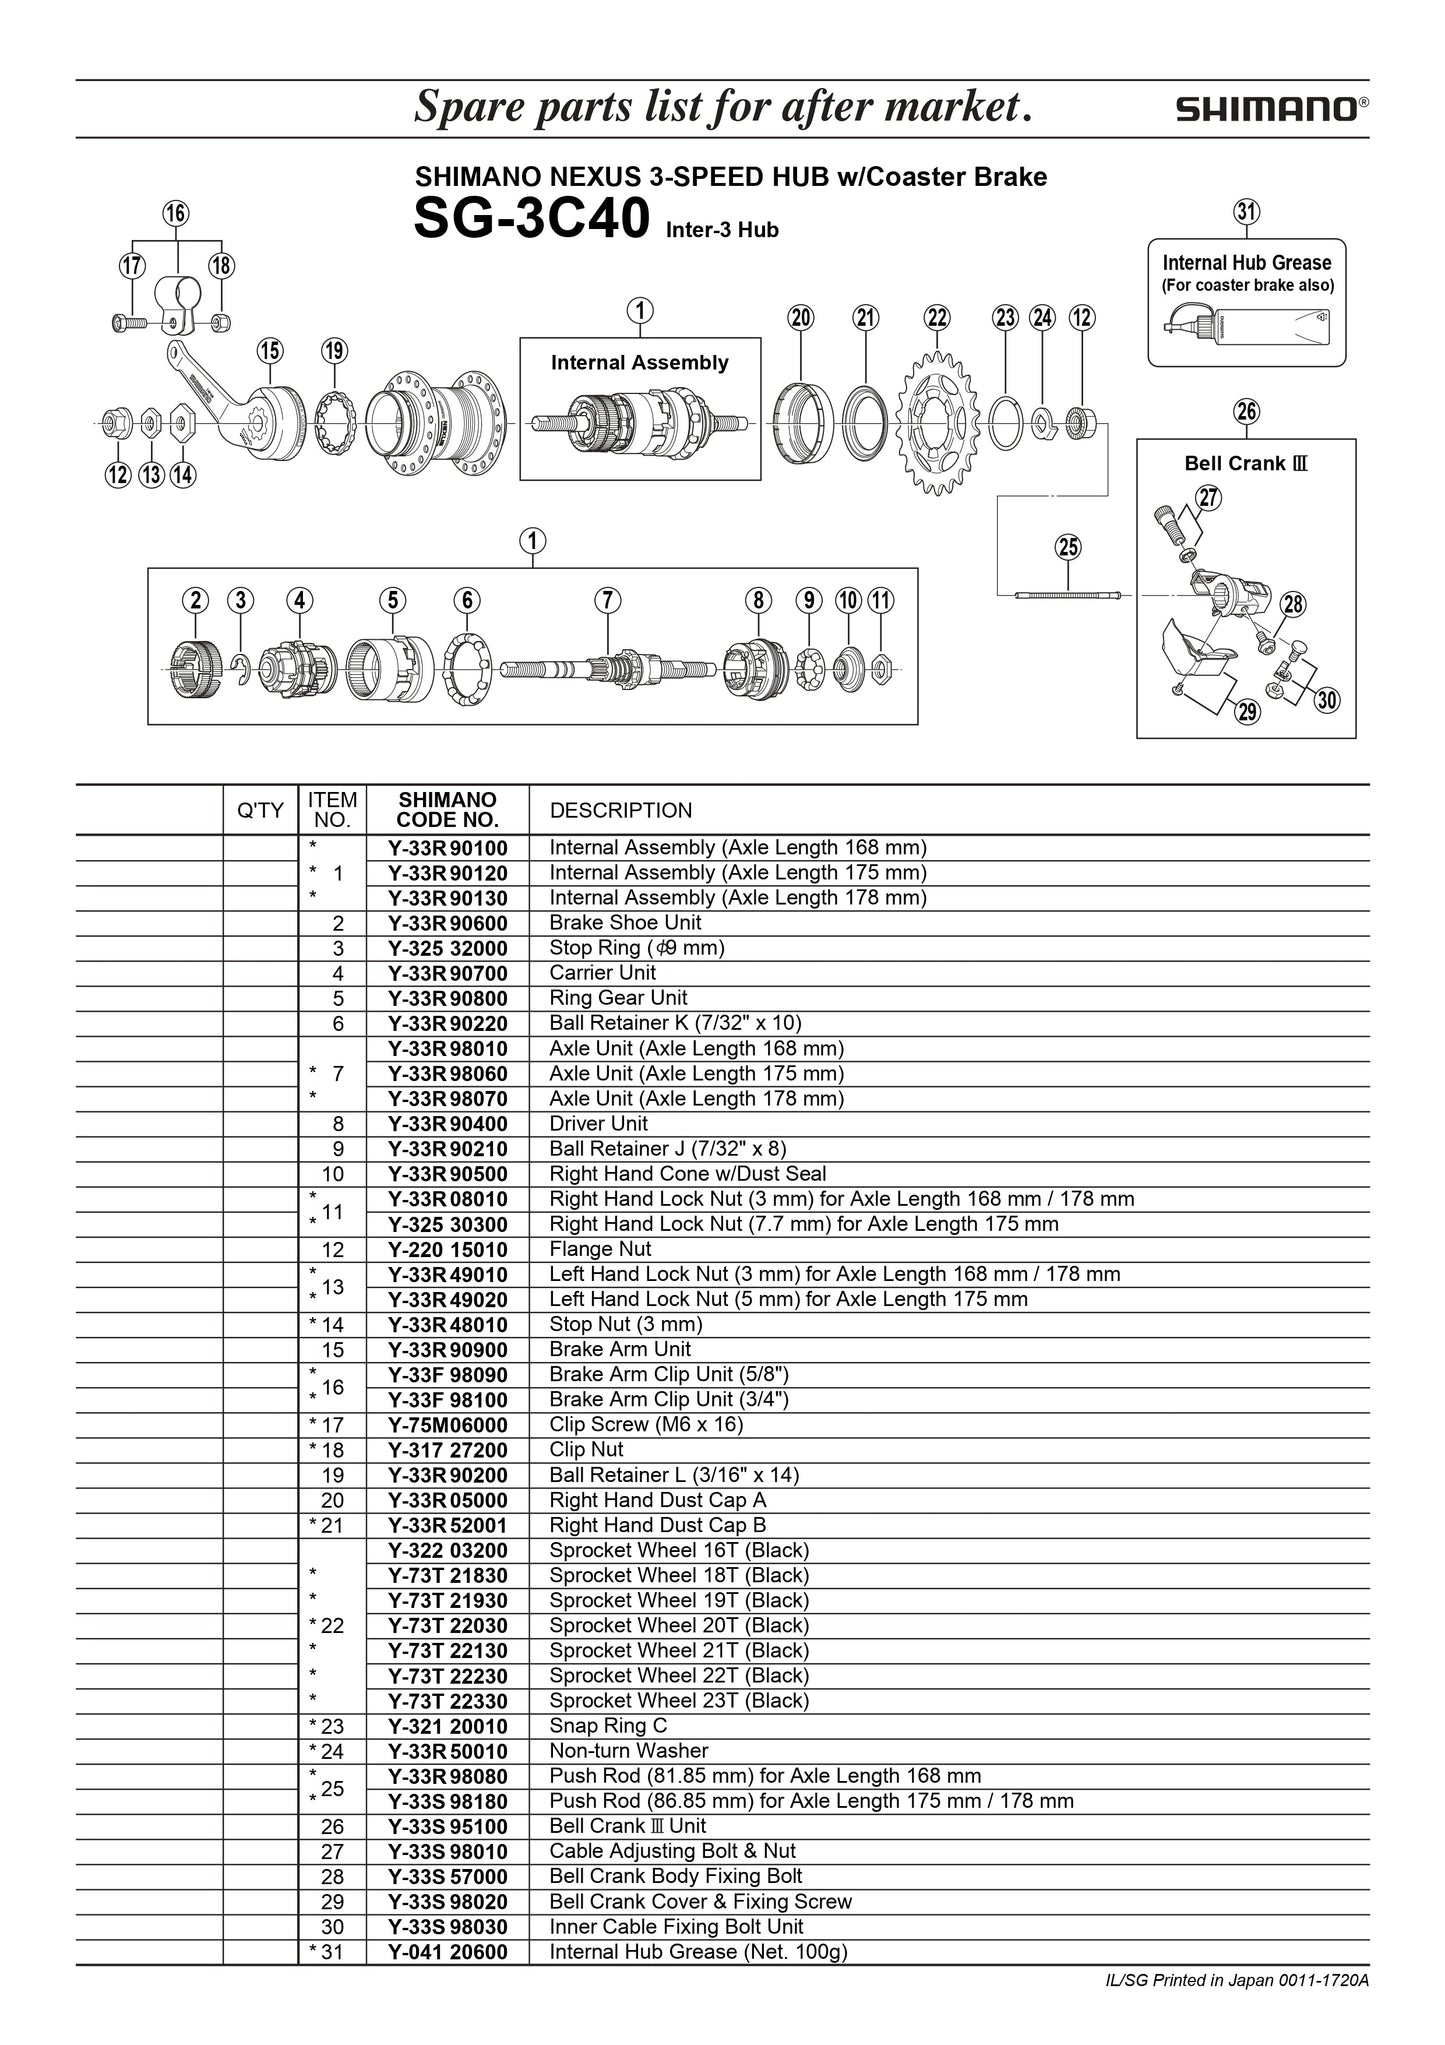 SHIMANO Nexus SG-3C40 Hub 3-Speed Ball Retainer J - 7/32" x 8 - Y33R90210-Pit Crew Cycles